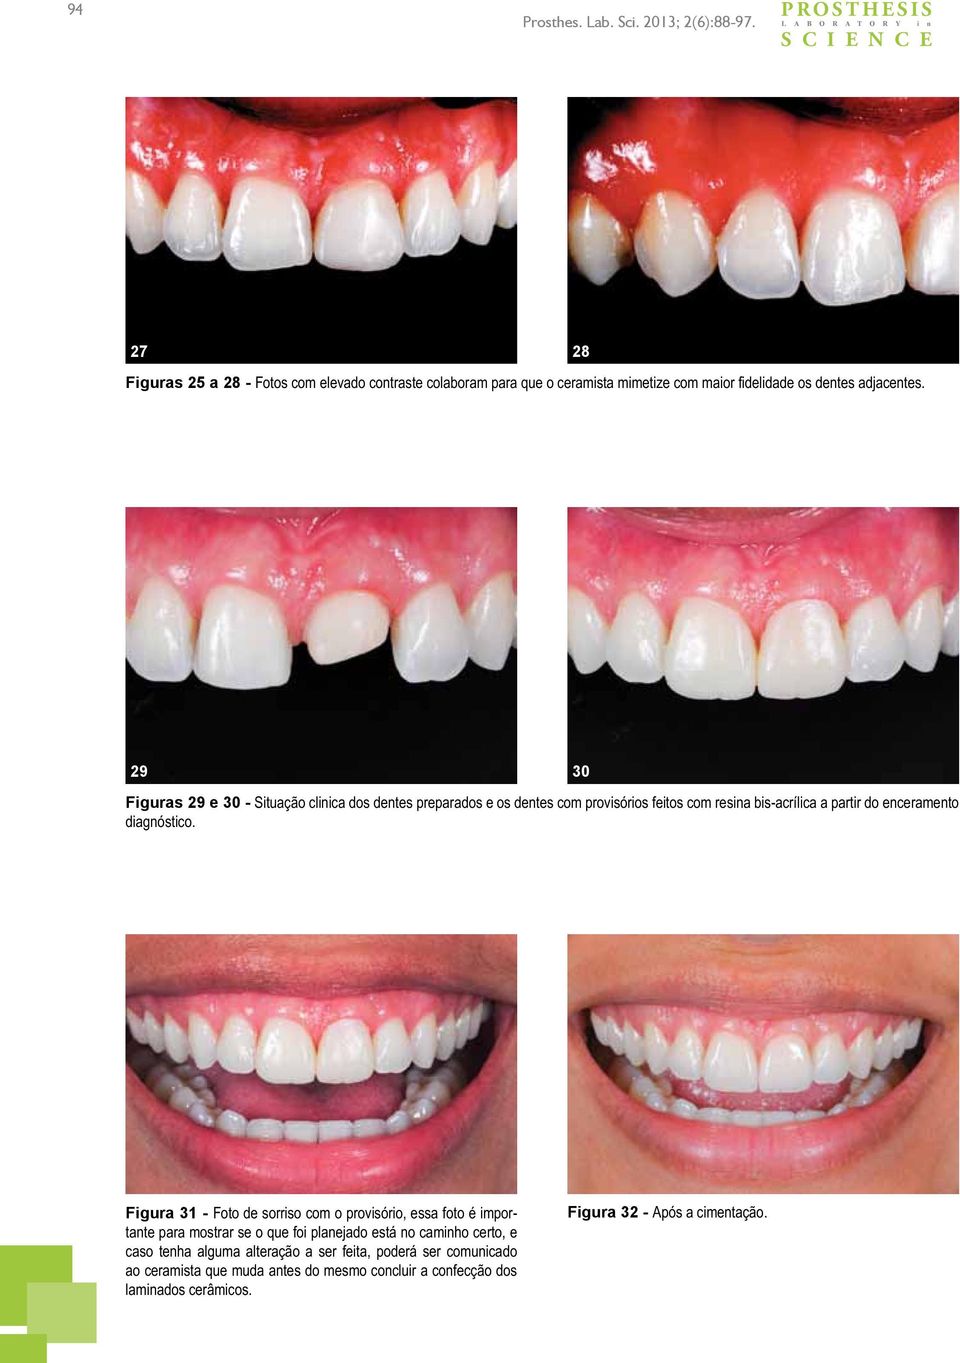 28 29 Figuras 29 e 30 - Situação clinica dos dentes preparados e os dentes com provisórios feitos com resina bis-acrílica a partir do enceramento diagnóstico.